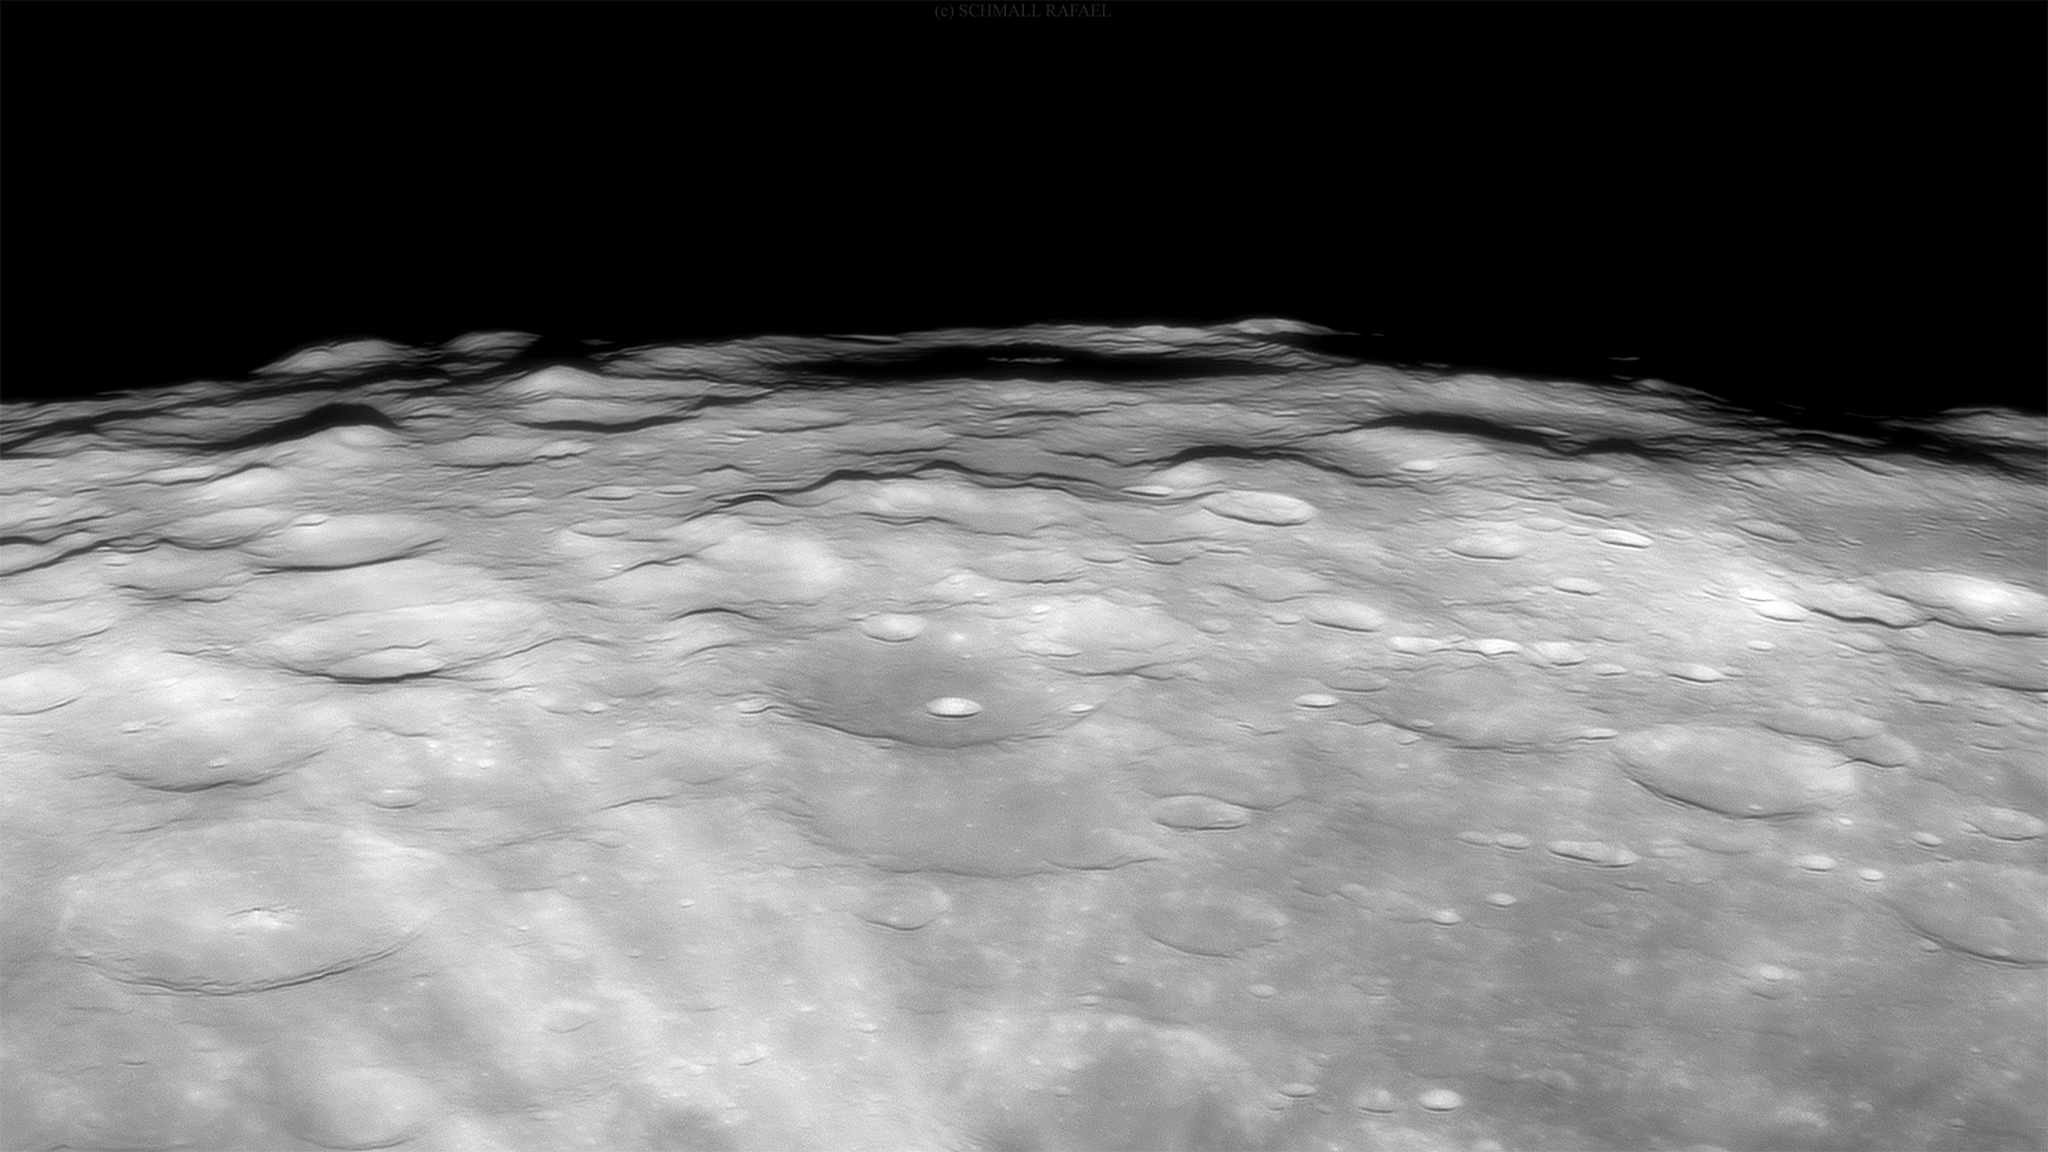 Holdrészlet - Drygalski kráter és környéke